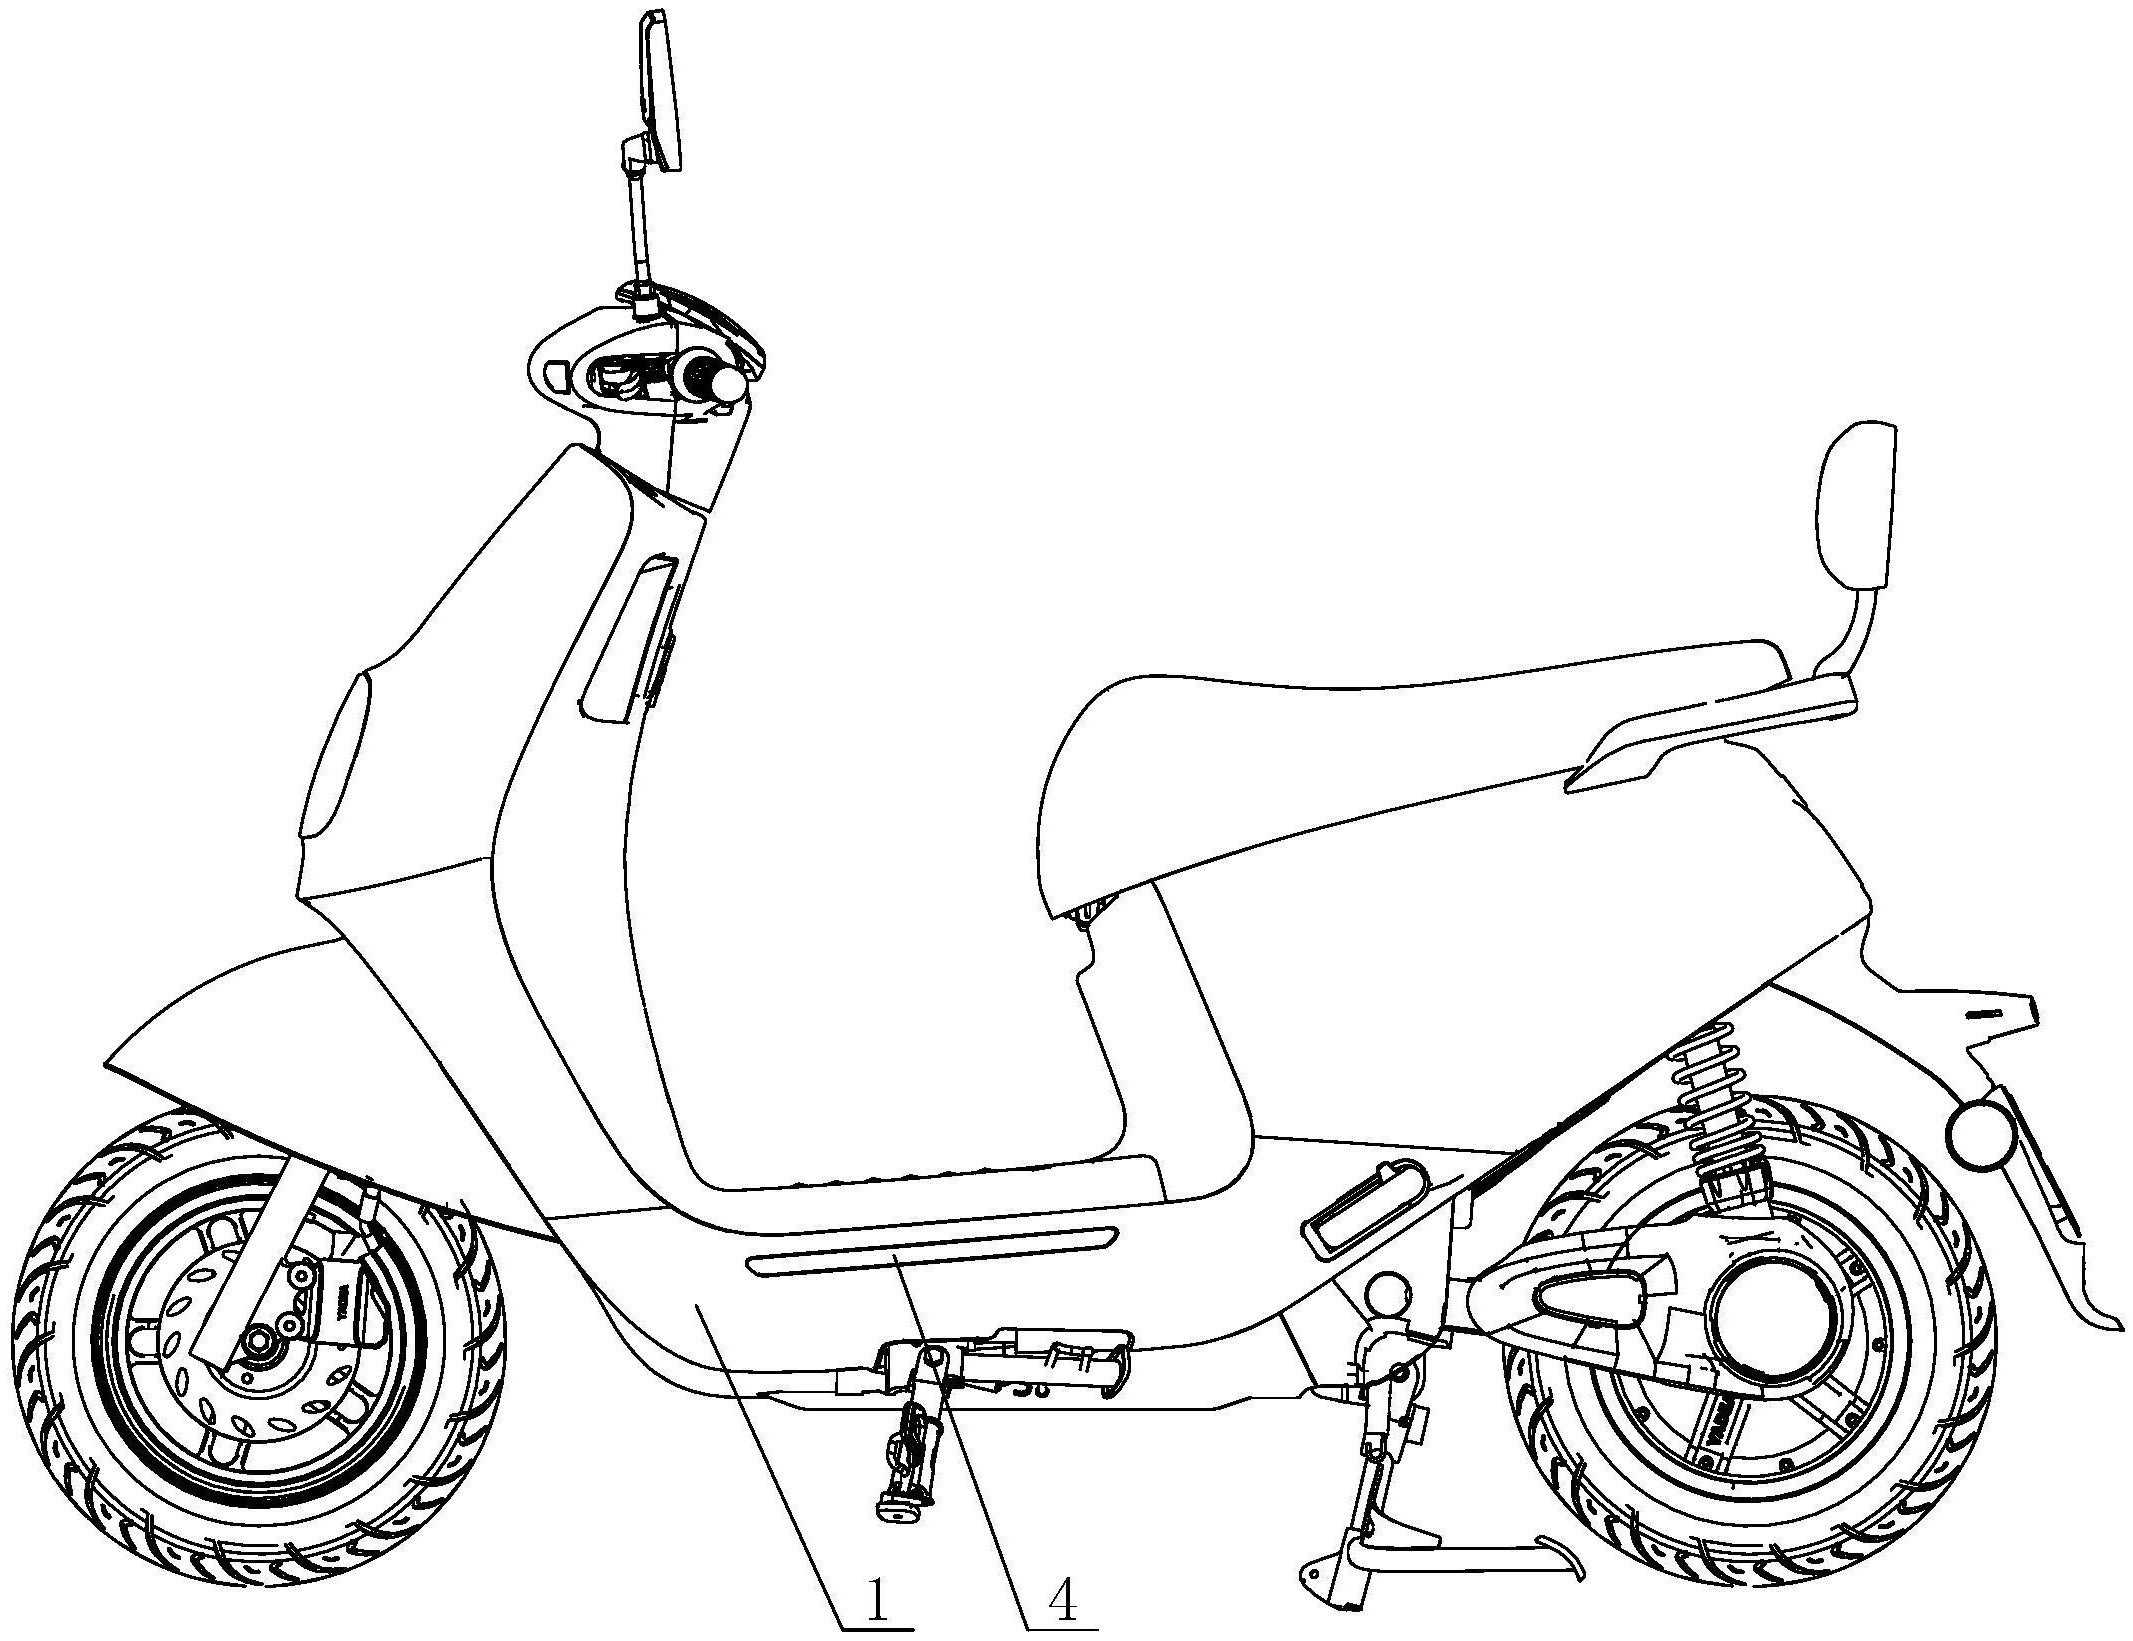 所述边条本体安装于电动自行车的侧面,所述边条本体的外侧面上安装有